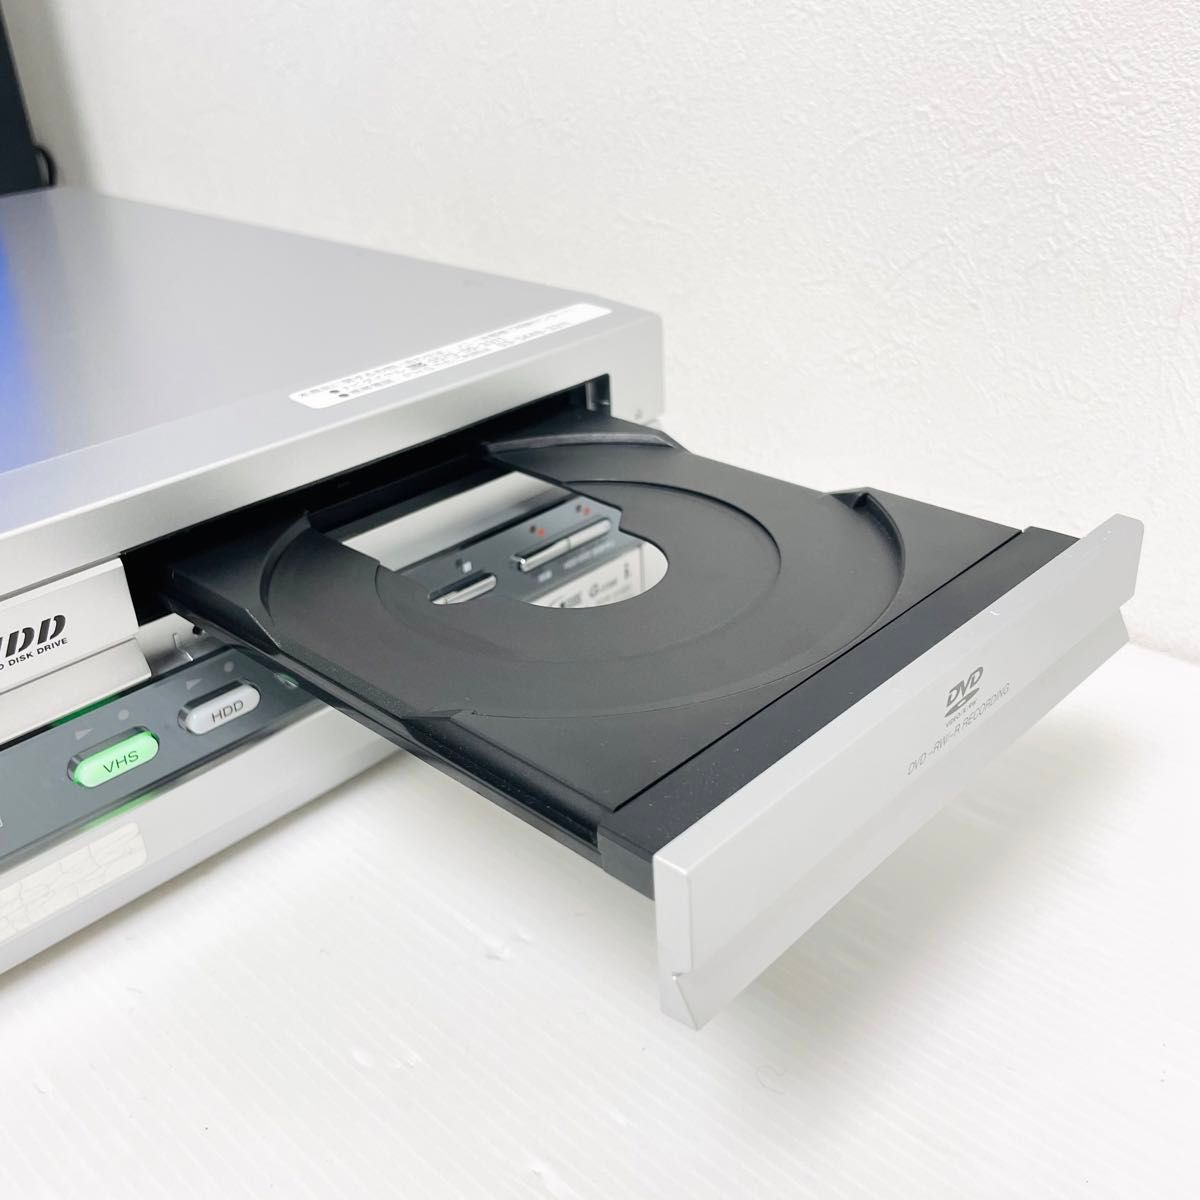 SONY スゴ録 VHS/DVD 一体型 HDDレコーダー RDR-VH85 ソニー DVDレコーダー スゴロク